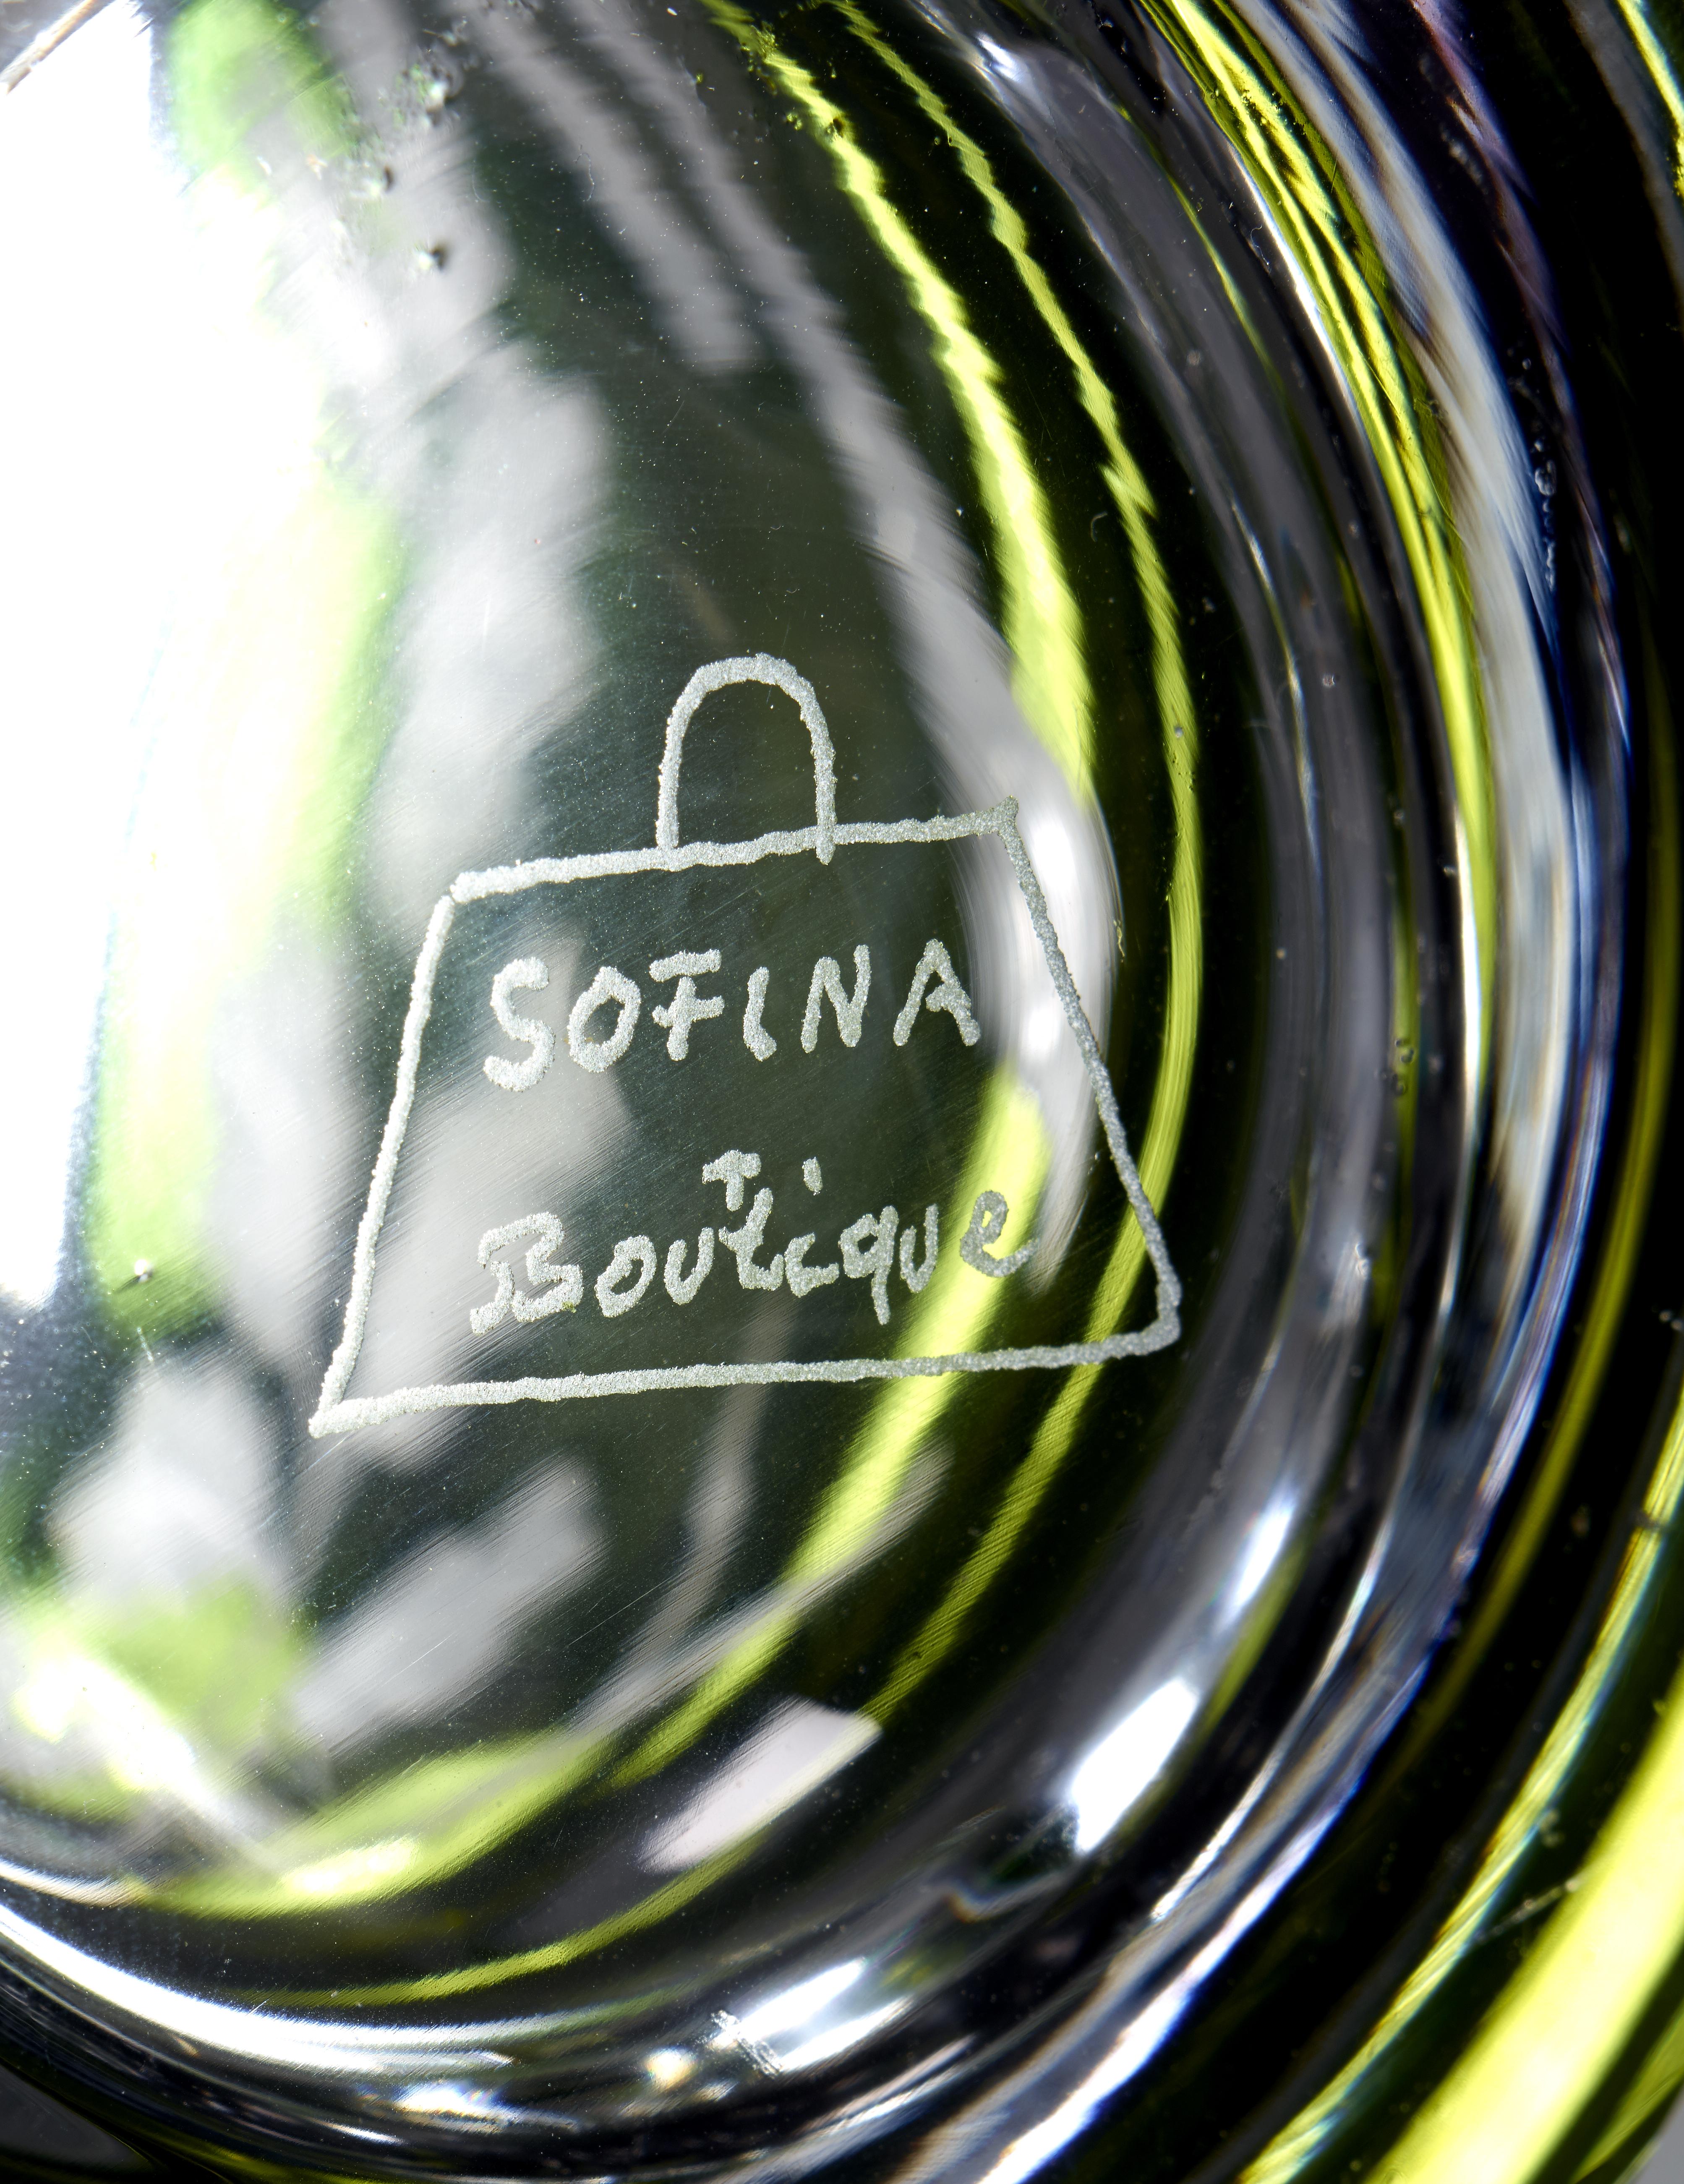 Vase aus mundgeblasenem, modernem Kristall mit zwei auf Eichenblättern sitzenden Vögeln in grauem Glas.
Das Dekor wird freihändig von Glaskünstlern rundum von Künstlern in Bayern von Sofina graviert.
Sofina Glas und Porzellan wurde 2013 in Bayern